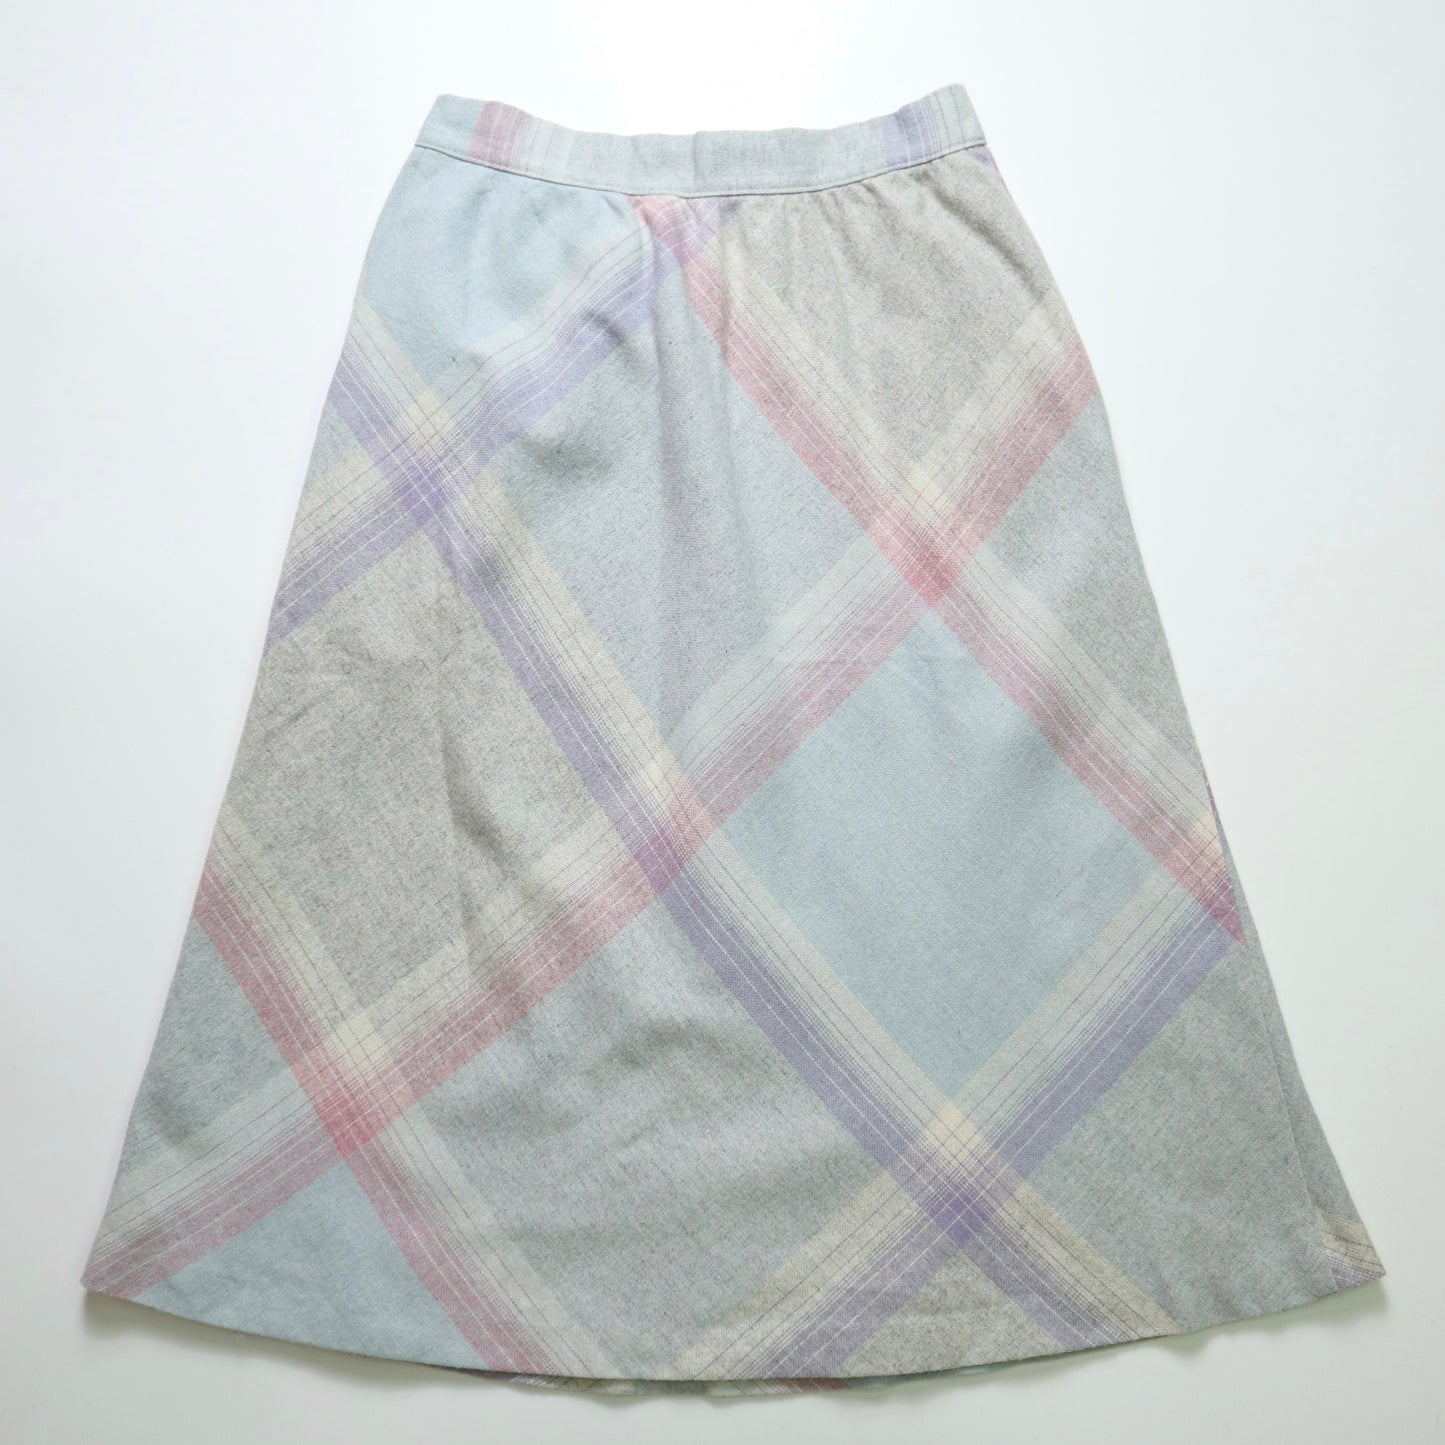 1980s American Light Blue Rhombus Skirt Retro Skirt 